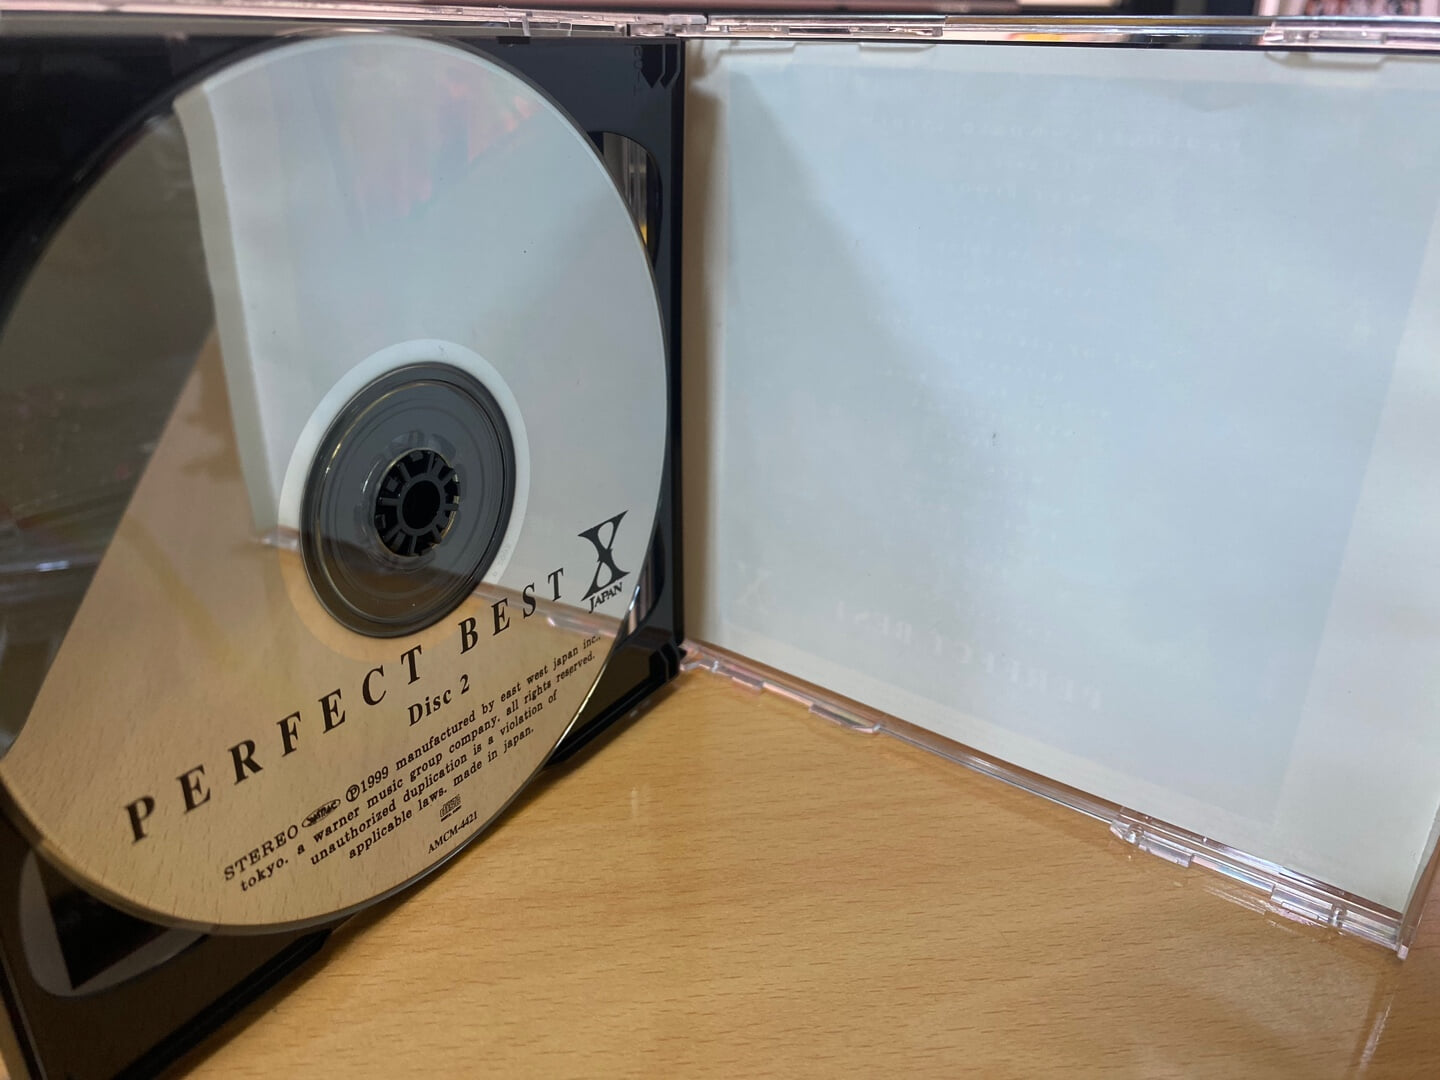 엑스 재팬 - X Japan - Perfect Best 2Cds [일본발매]